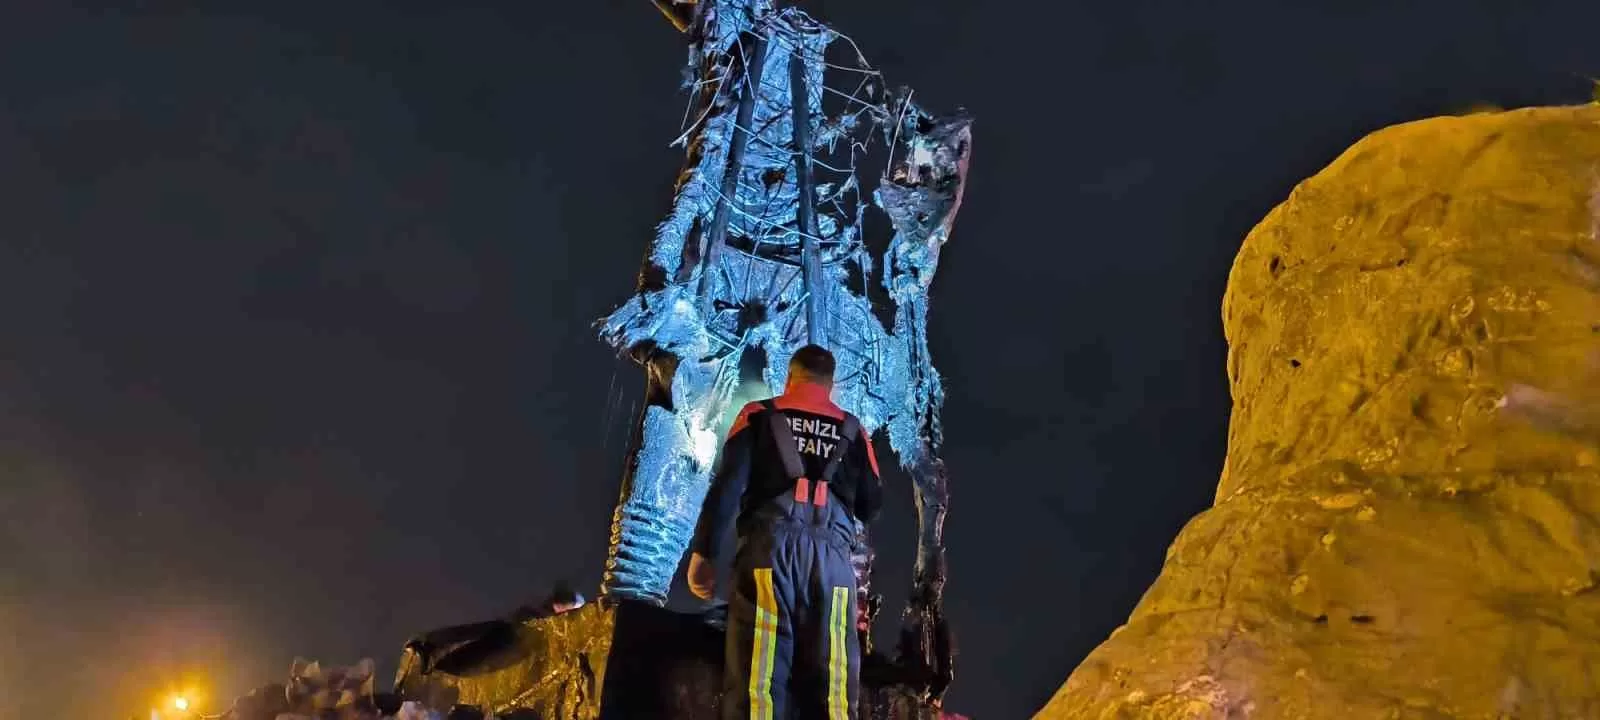 Denizli’de Ulusal Gayret Kahramanının Heykeli Kundaklandı